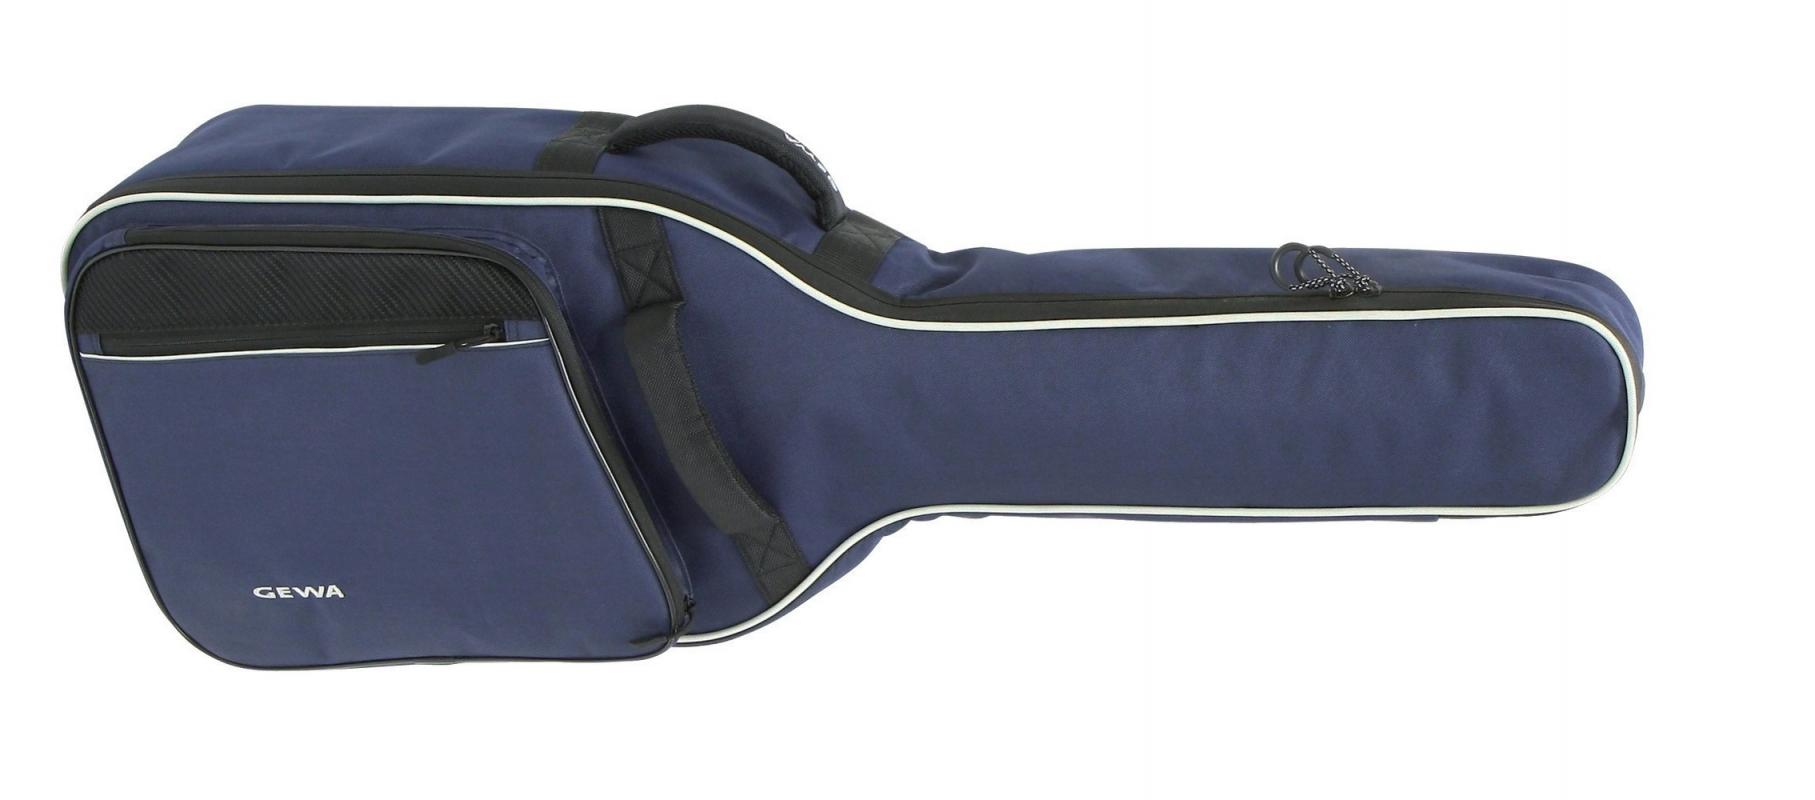 Tasche 1/2-Konzertgitarre blau